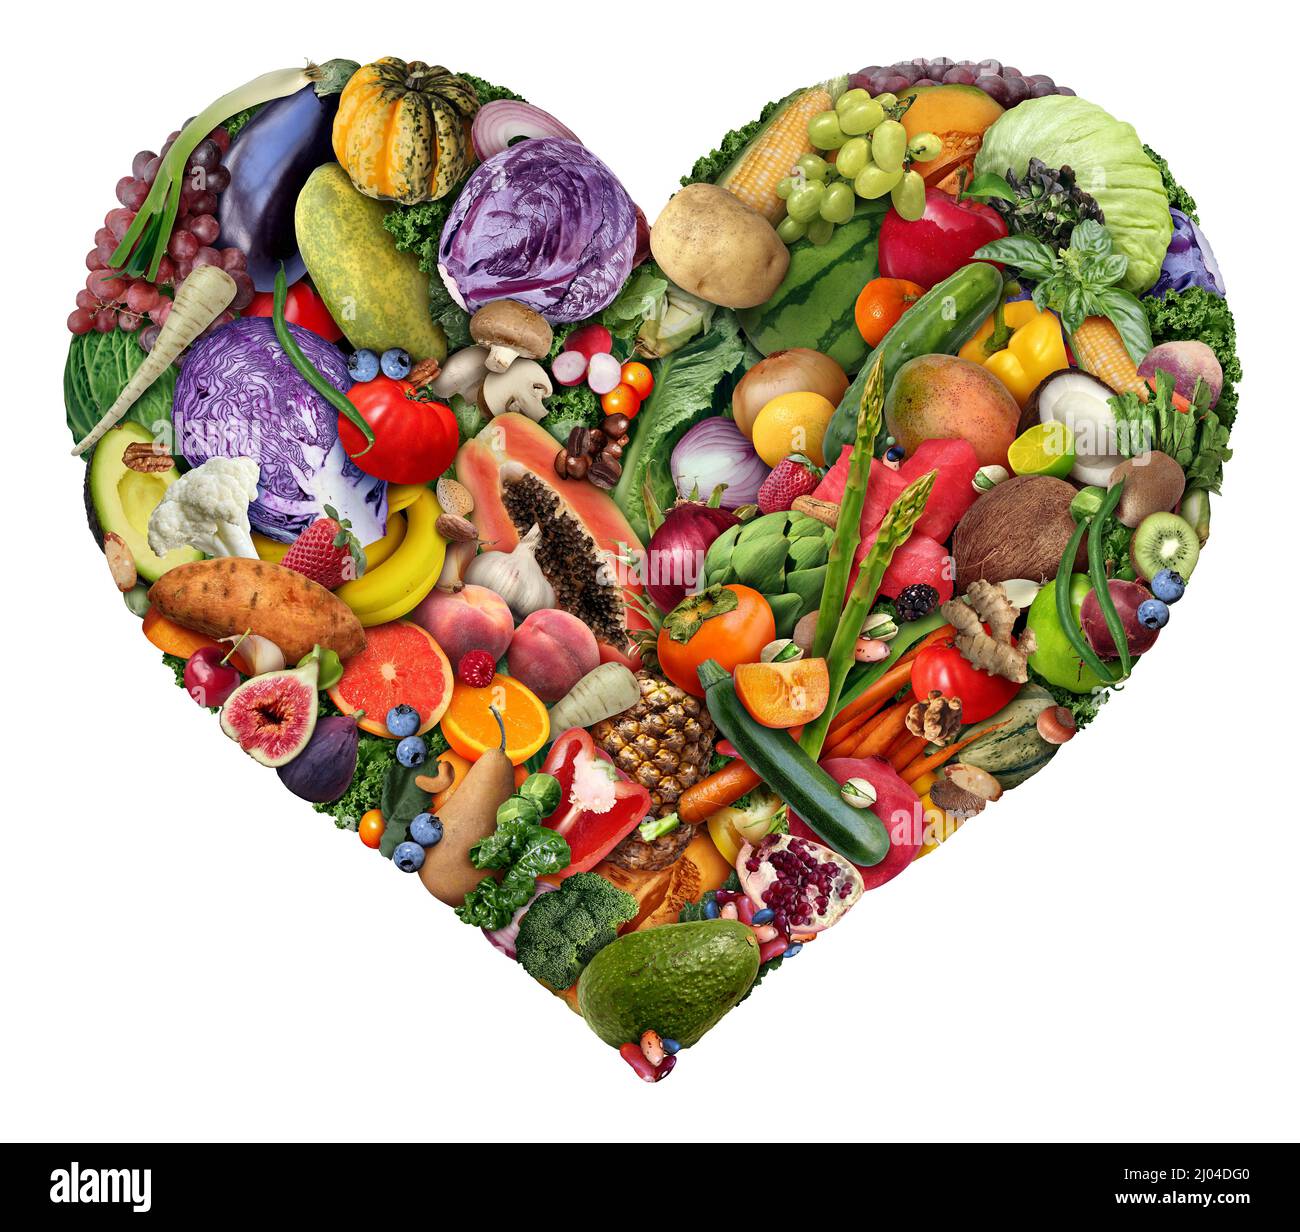 Obst und Gemüse Liebe und Herzgesundheit Symbol für Veganer und Veganer oder für gesundes Essen als Gruppe von frischen reifen Früchten und Nüssen mit Bohnen. Stockfoto